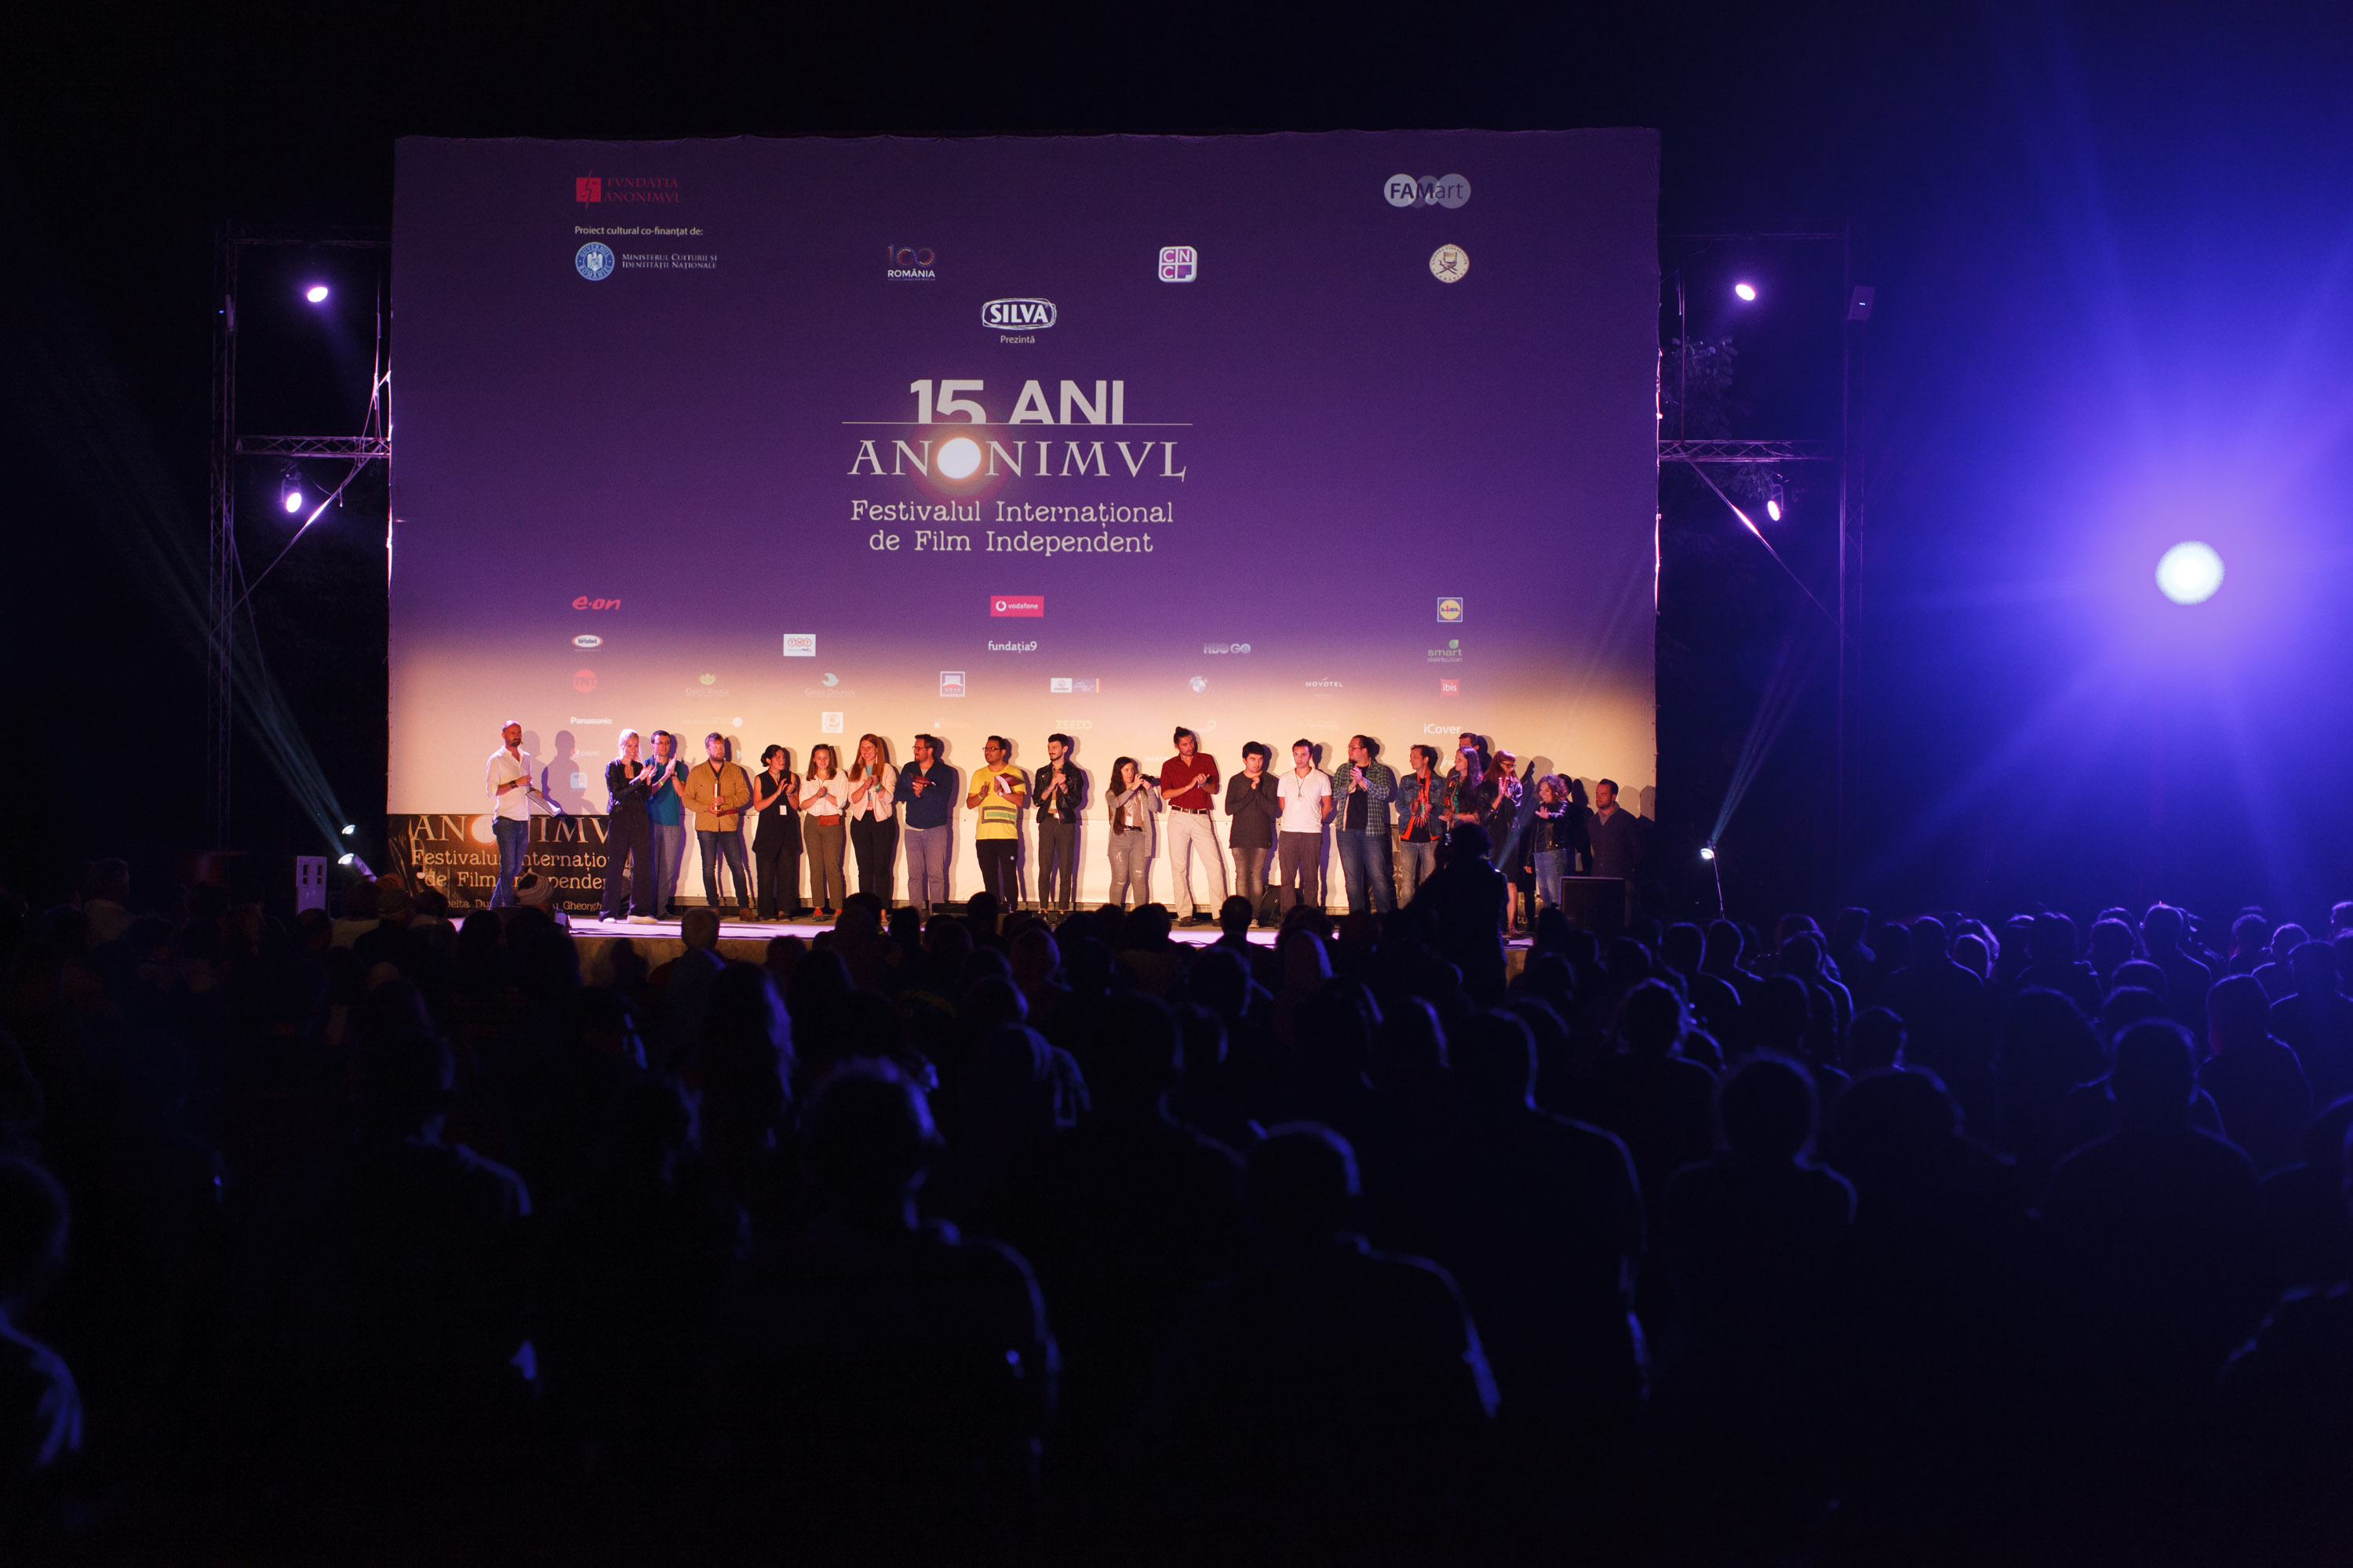 Trofeul celei de-a 15-a ediții a festivalului de film ANONIMUL, câștigat de regizorul filmului „Under the Tree”, Hafsteinn Gunnar Sigurðsson. Lista întreagă a premiilor